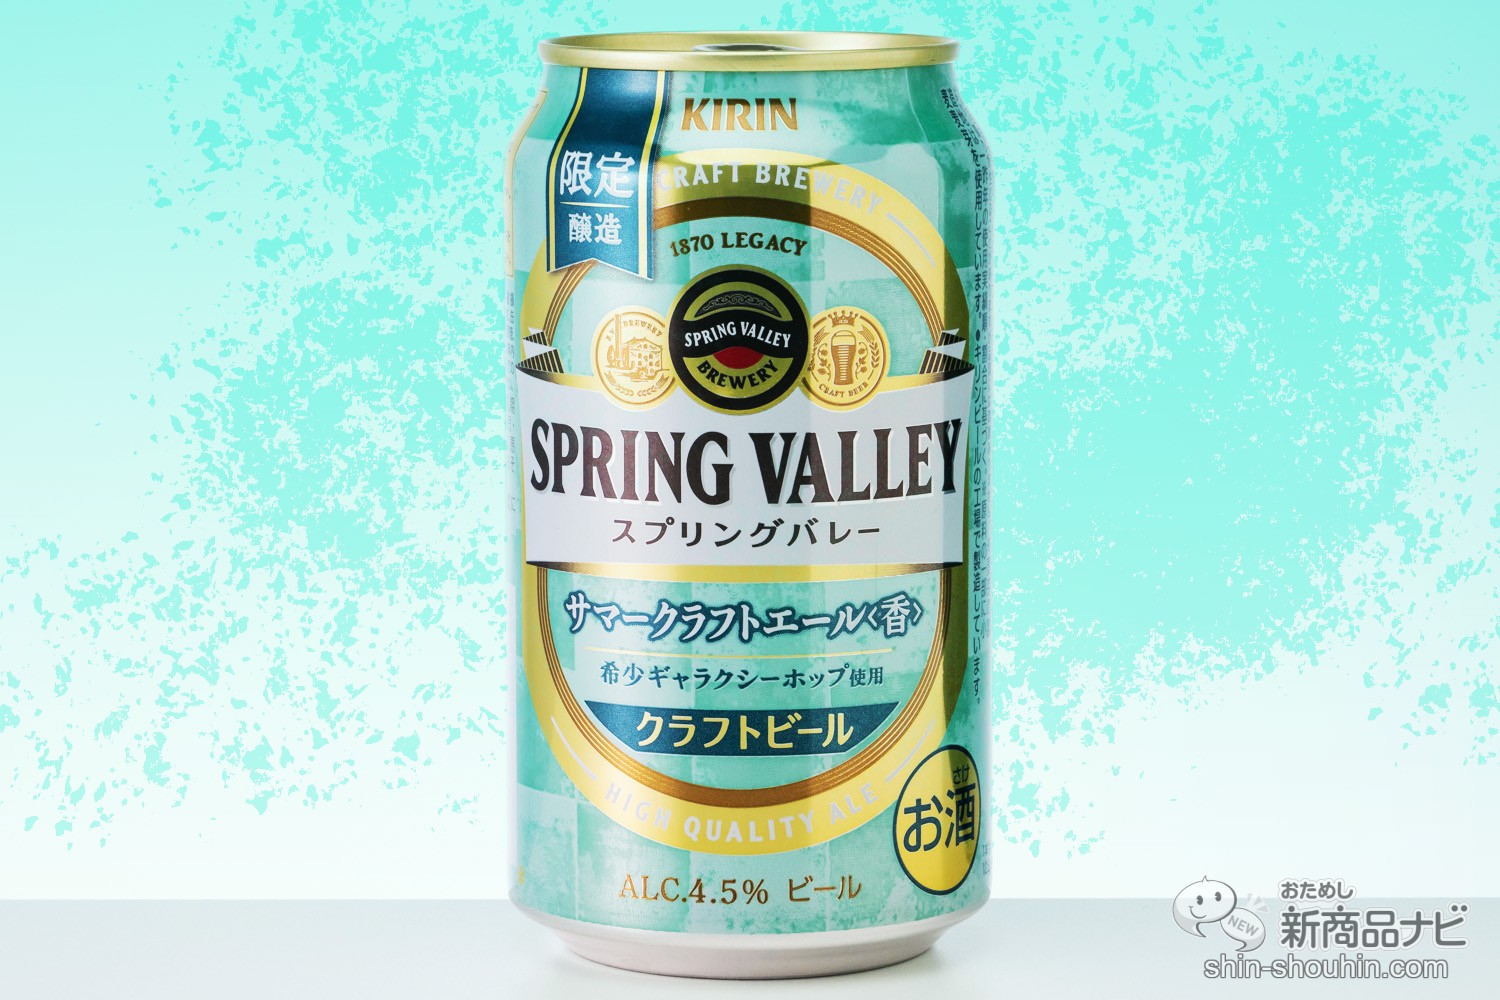 おためし新商品ナビ » Blog Archive » 【缶ビール】夏に華やぐ限定